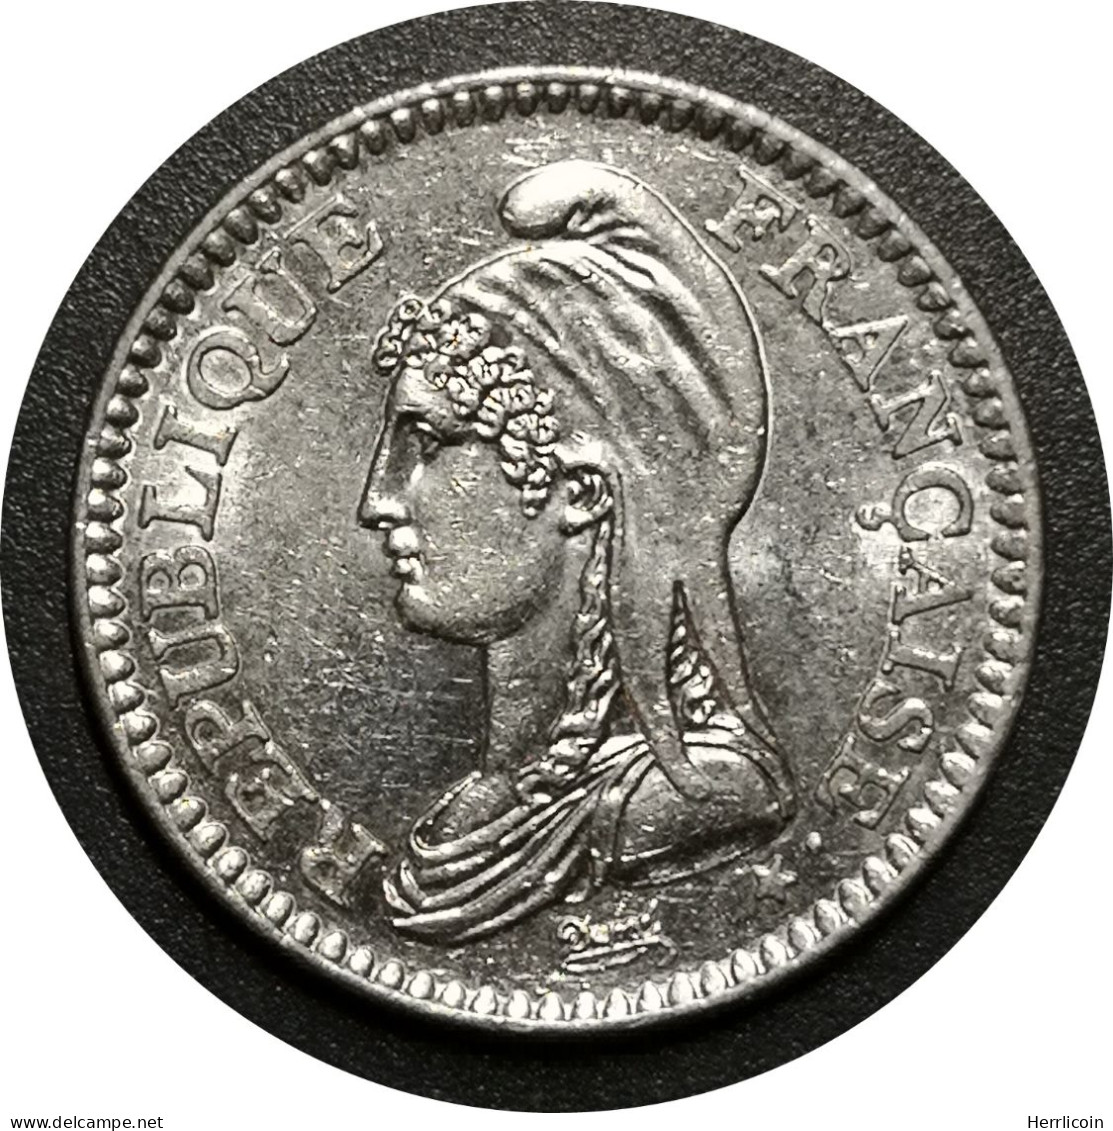 Monnaie France - 1992 - 1 Franc République Nickel - Commémoratives